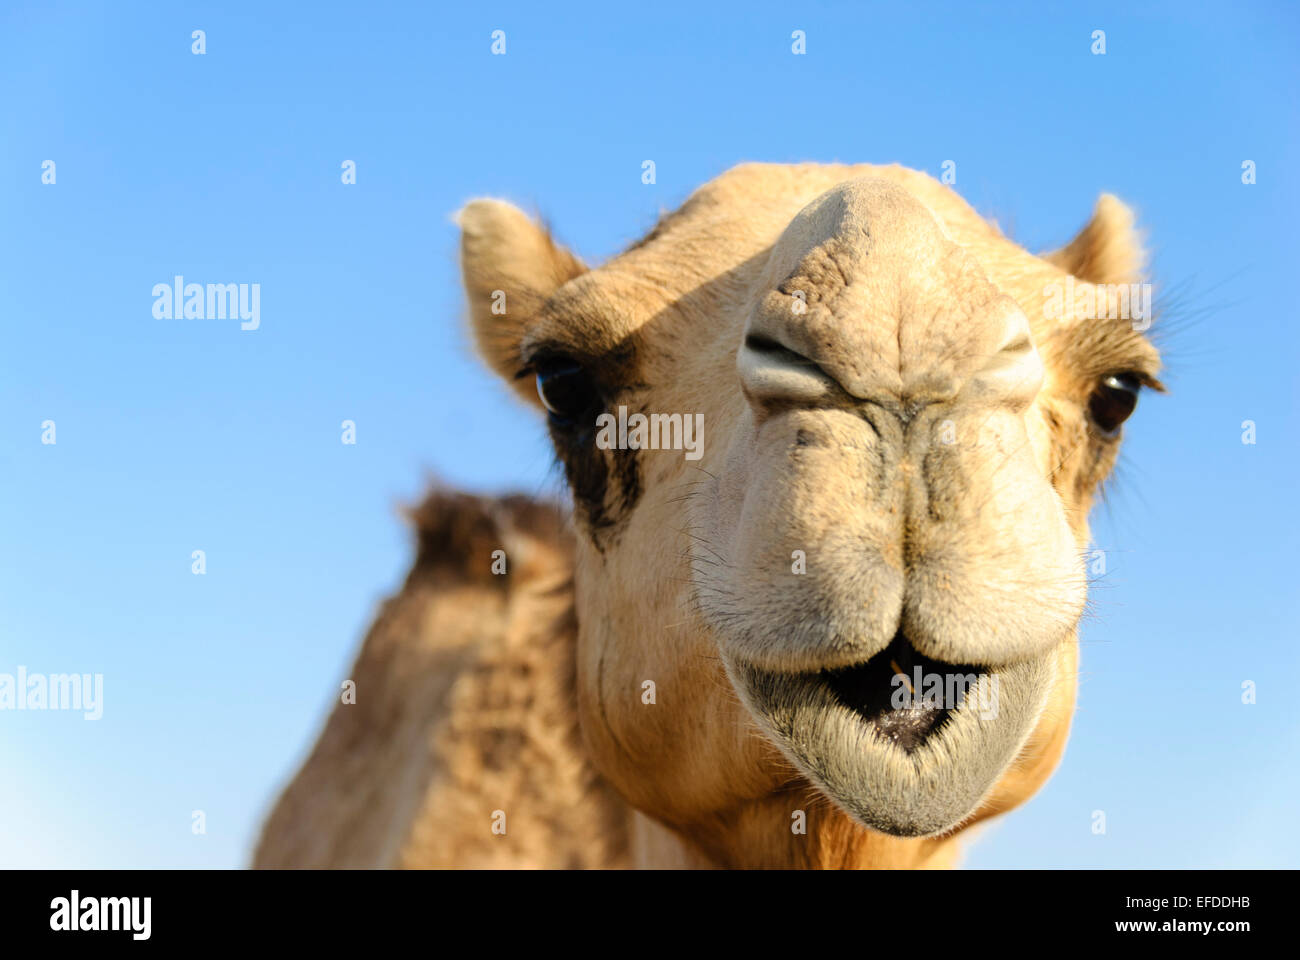 Libre d'un chameau, le nez et la bouche, les narines fermées pour garder hors du sable Banque D'Images